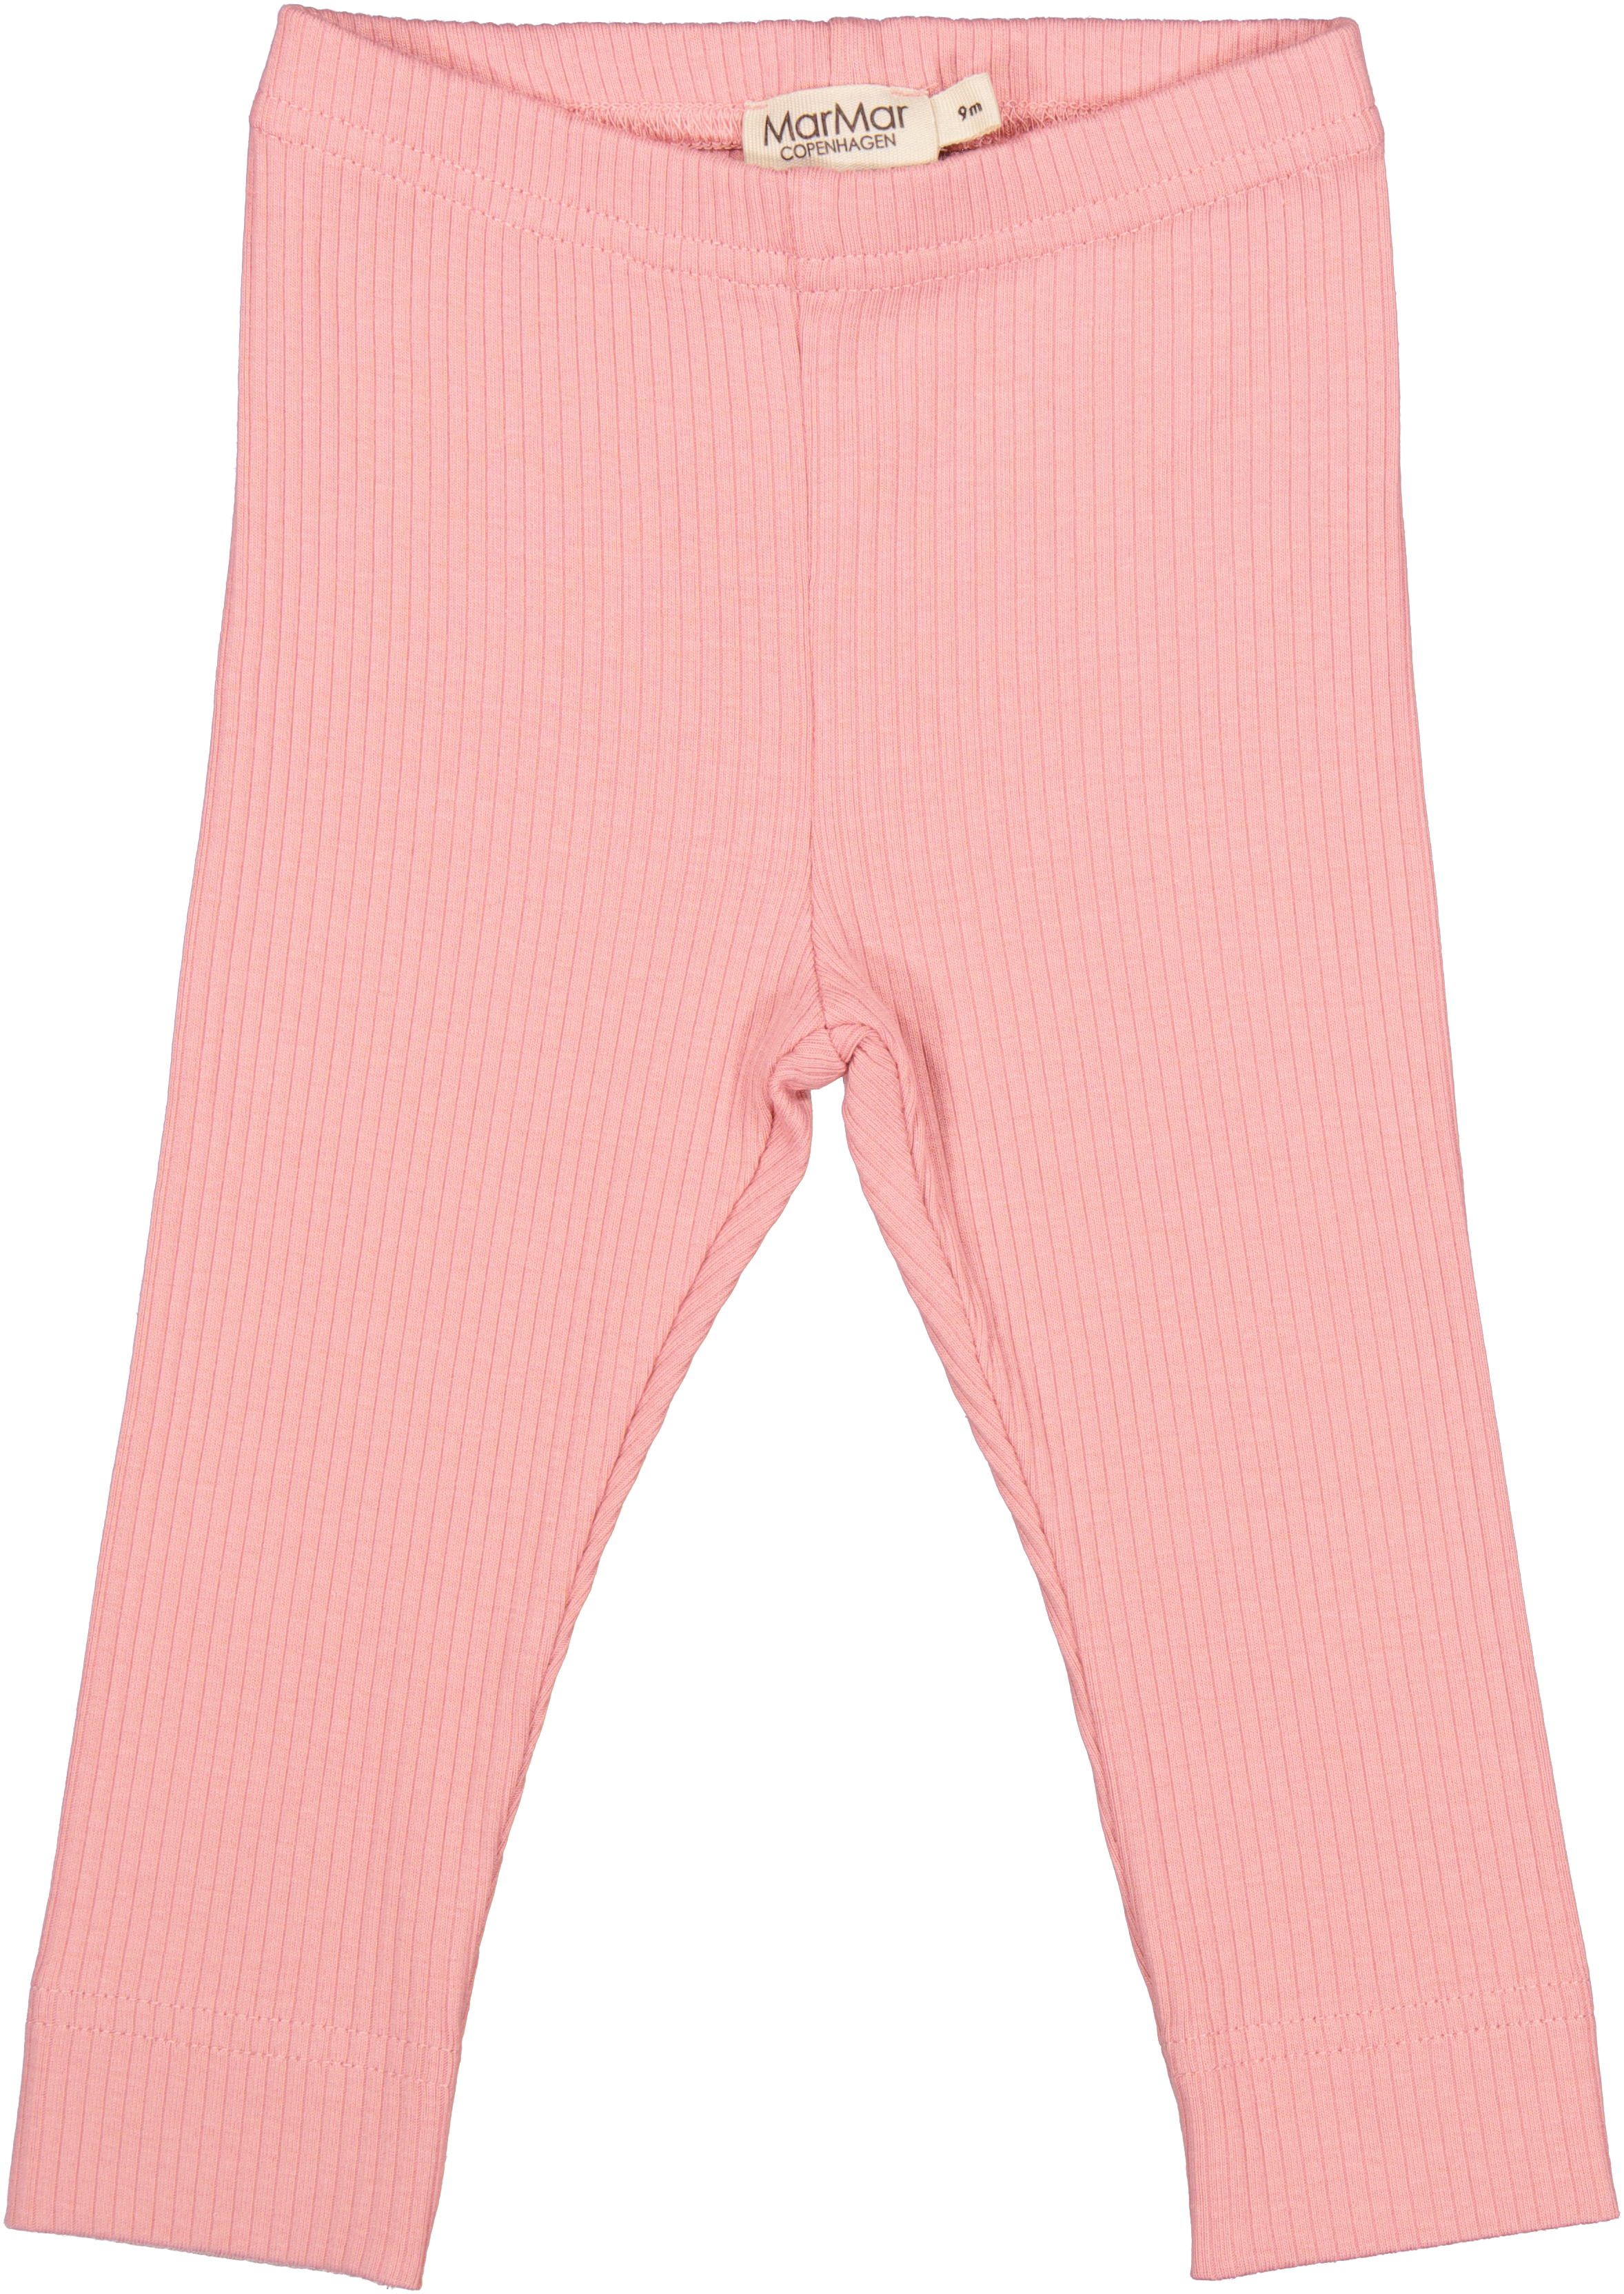 MarMar Copenhagen Leggings - Pink Delight